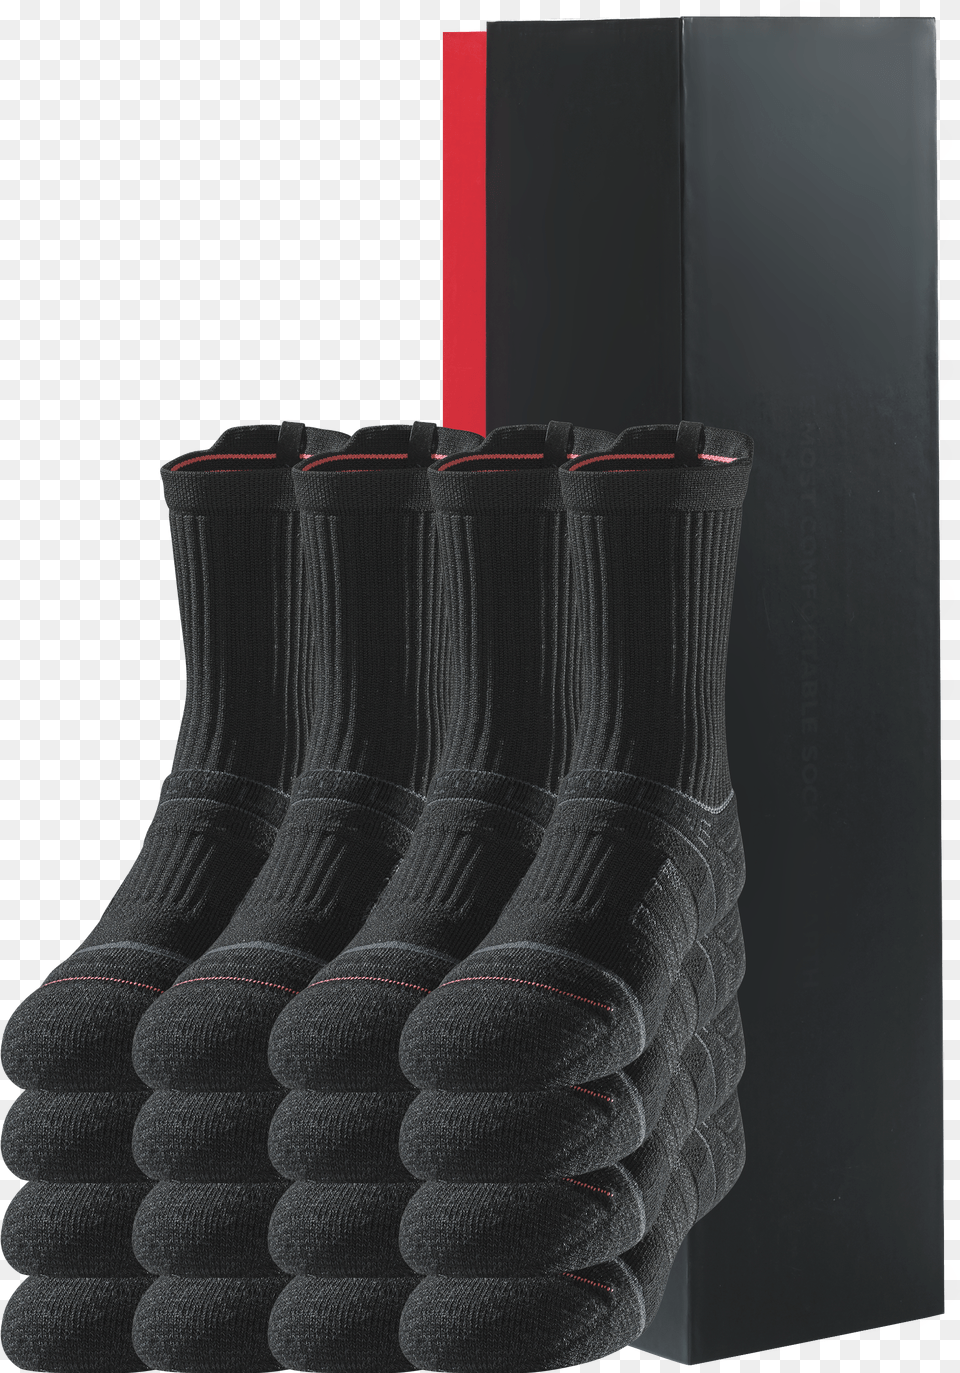 Kidmid 8 Black 1 Sock, Clothing, Hosiery Free Png